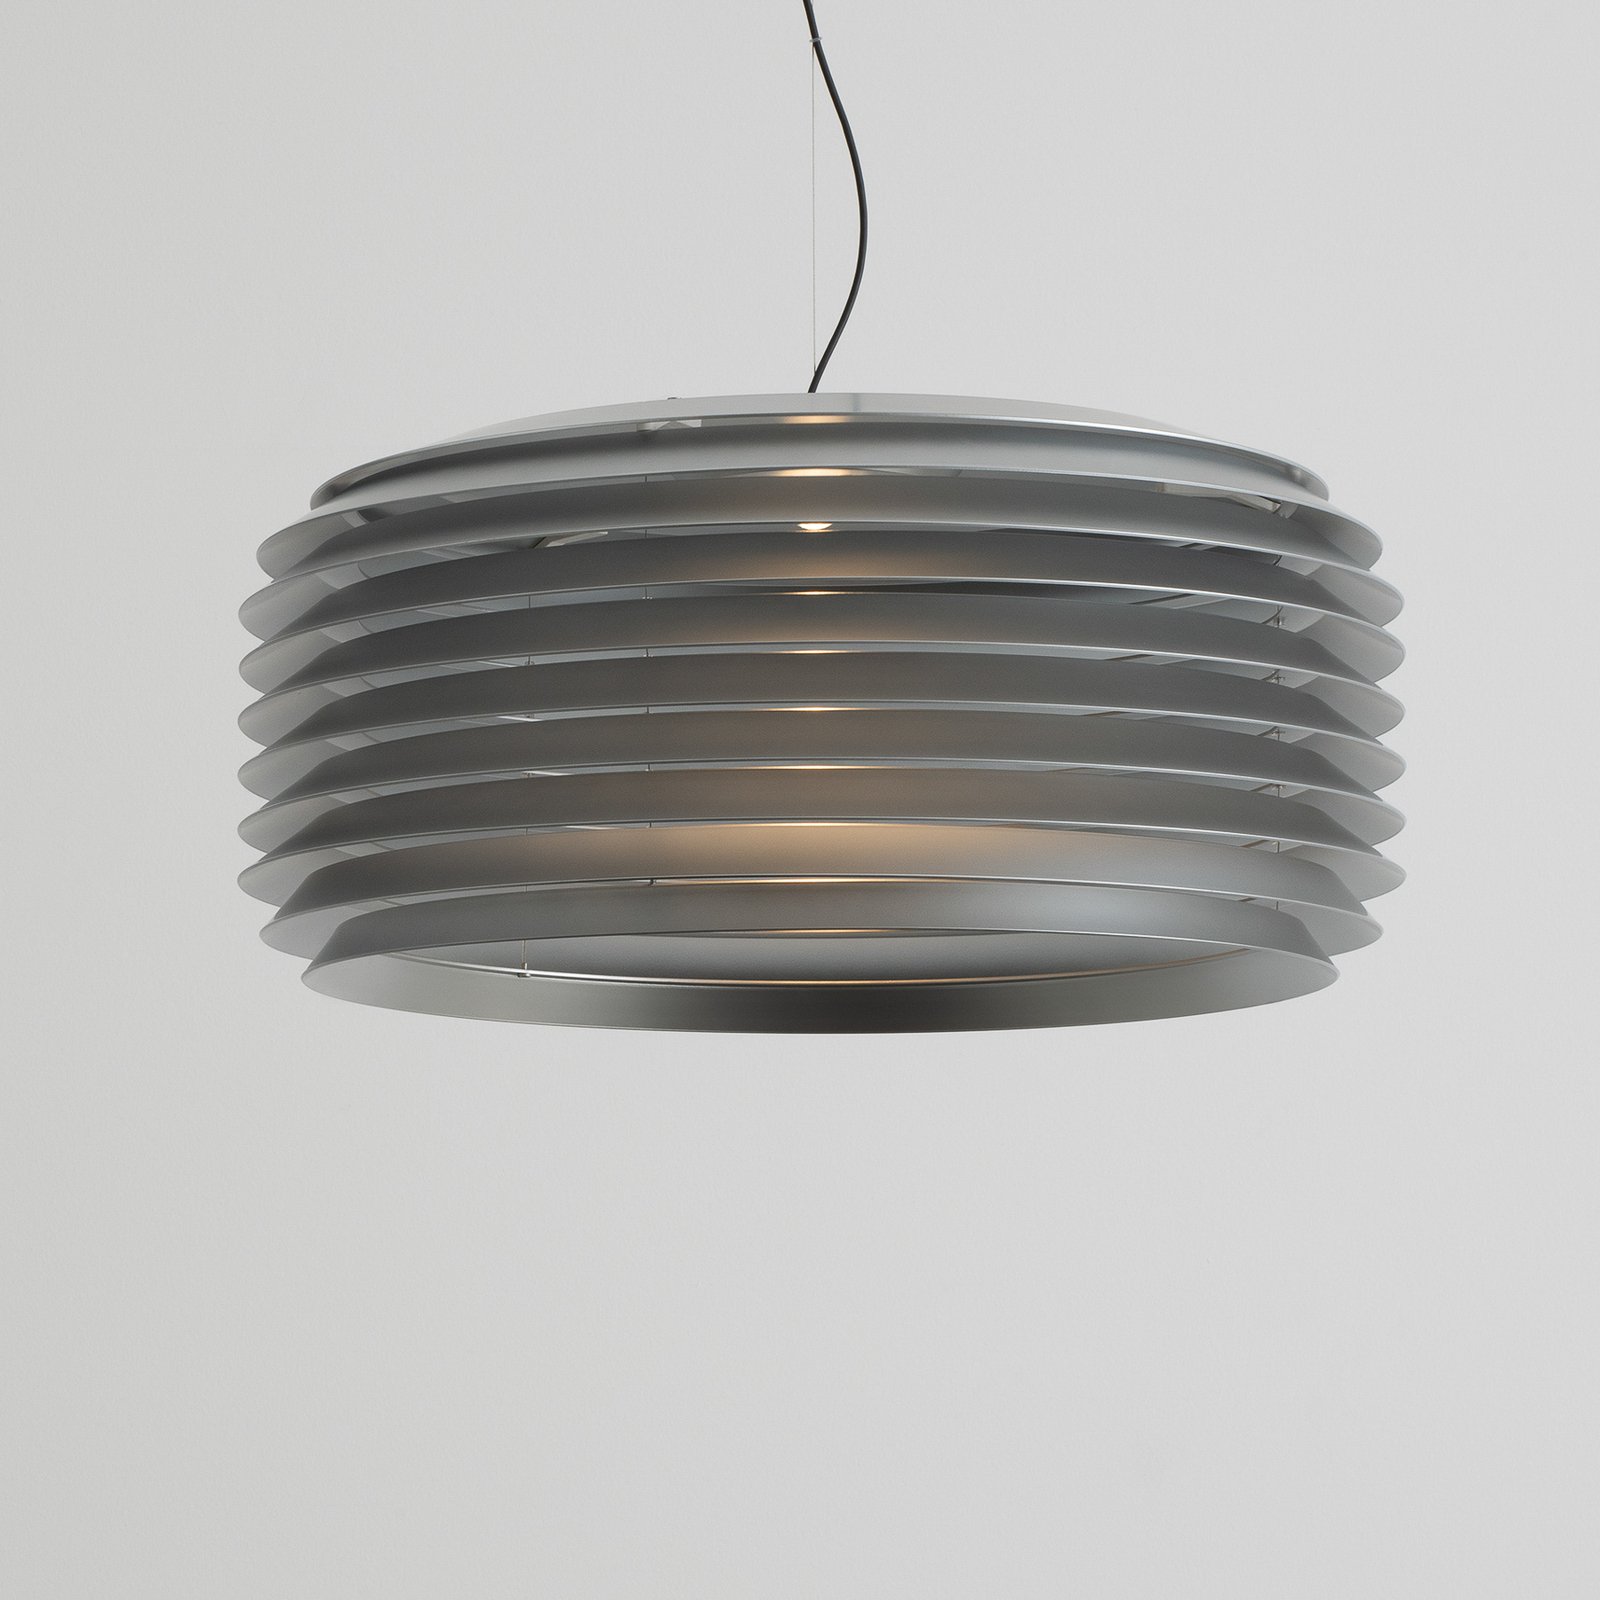 Lampă suspendată Artemide Slicing LED, IP65, Ø 63 cm